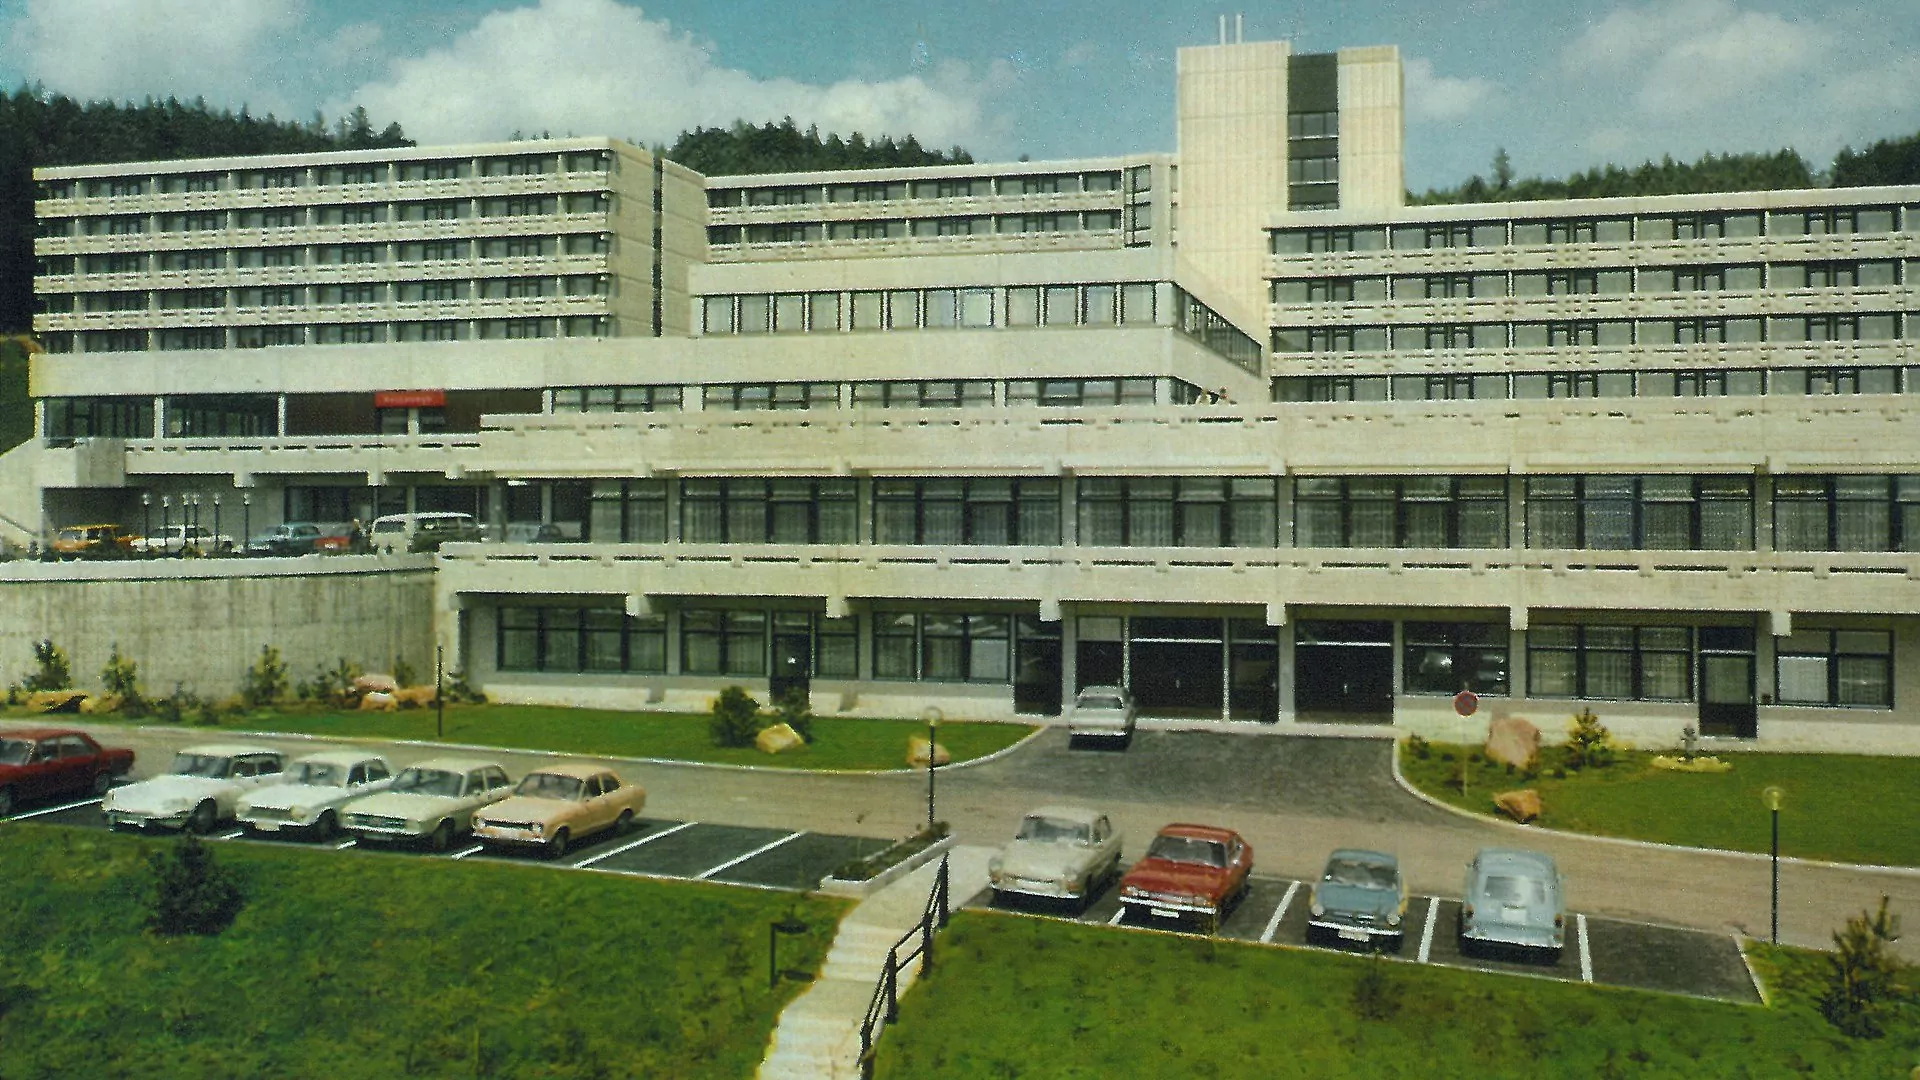 Ansichtskarte der Kurklinik von 1974; links im Bild ist das orangefarbene Schild des Hallenbades zu erkennen, das öffentlich zugänglich war.